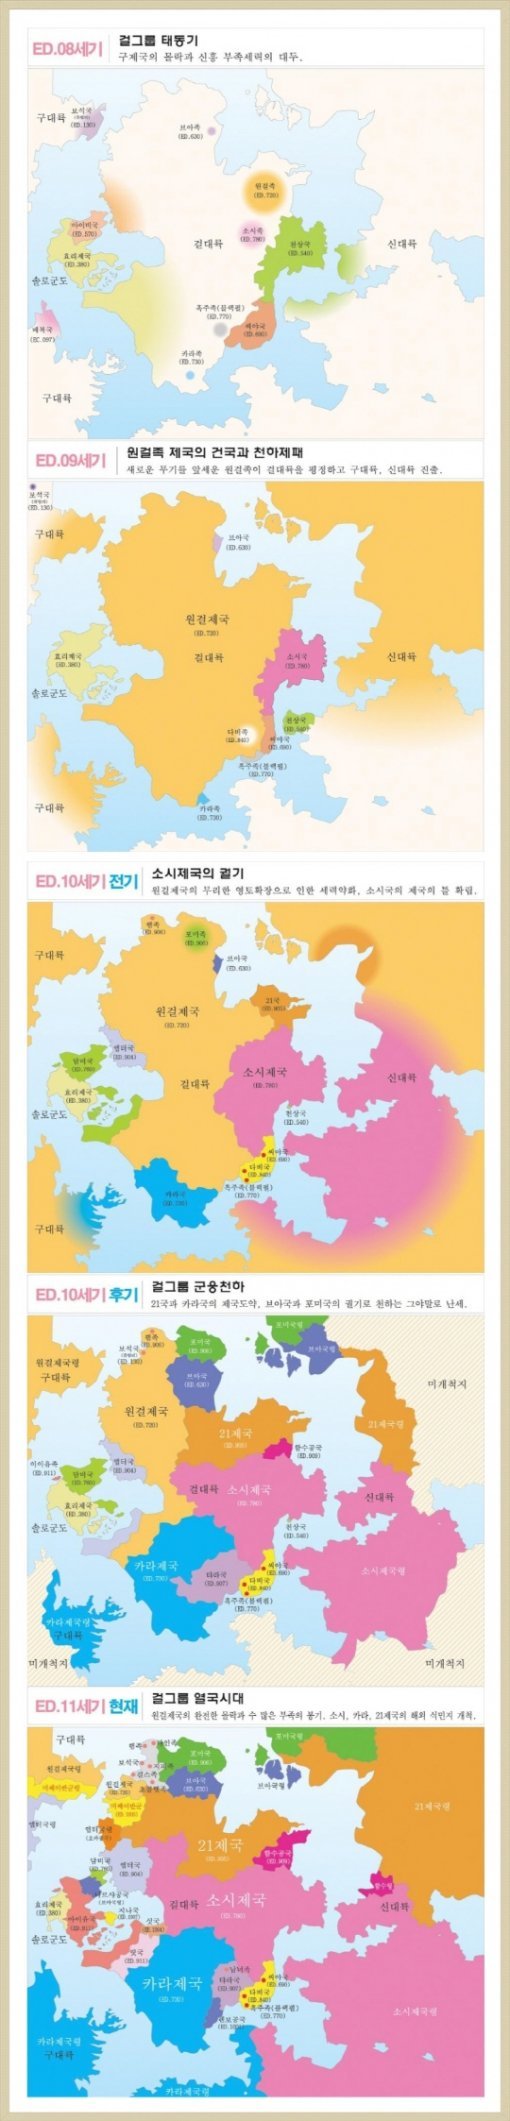 걸그룹지도. (사진출처=인터넷 커뮤니티)